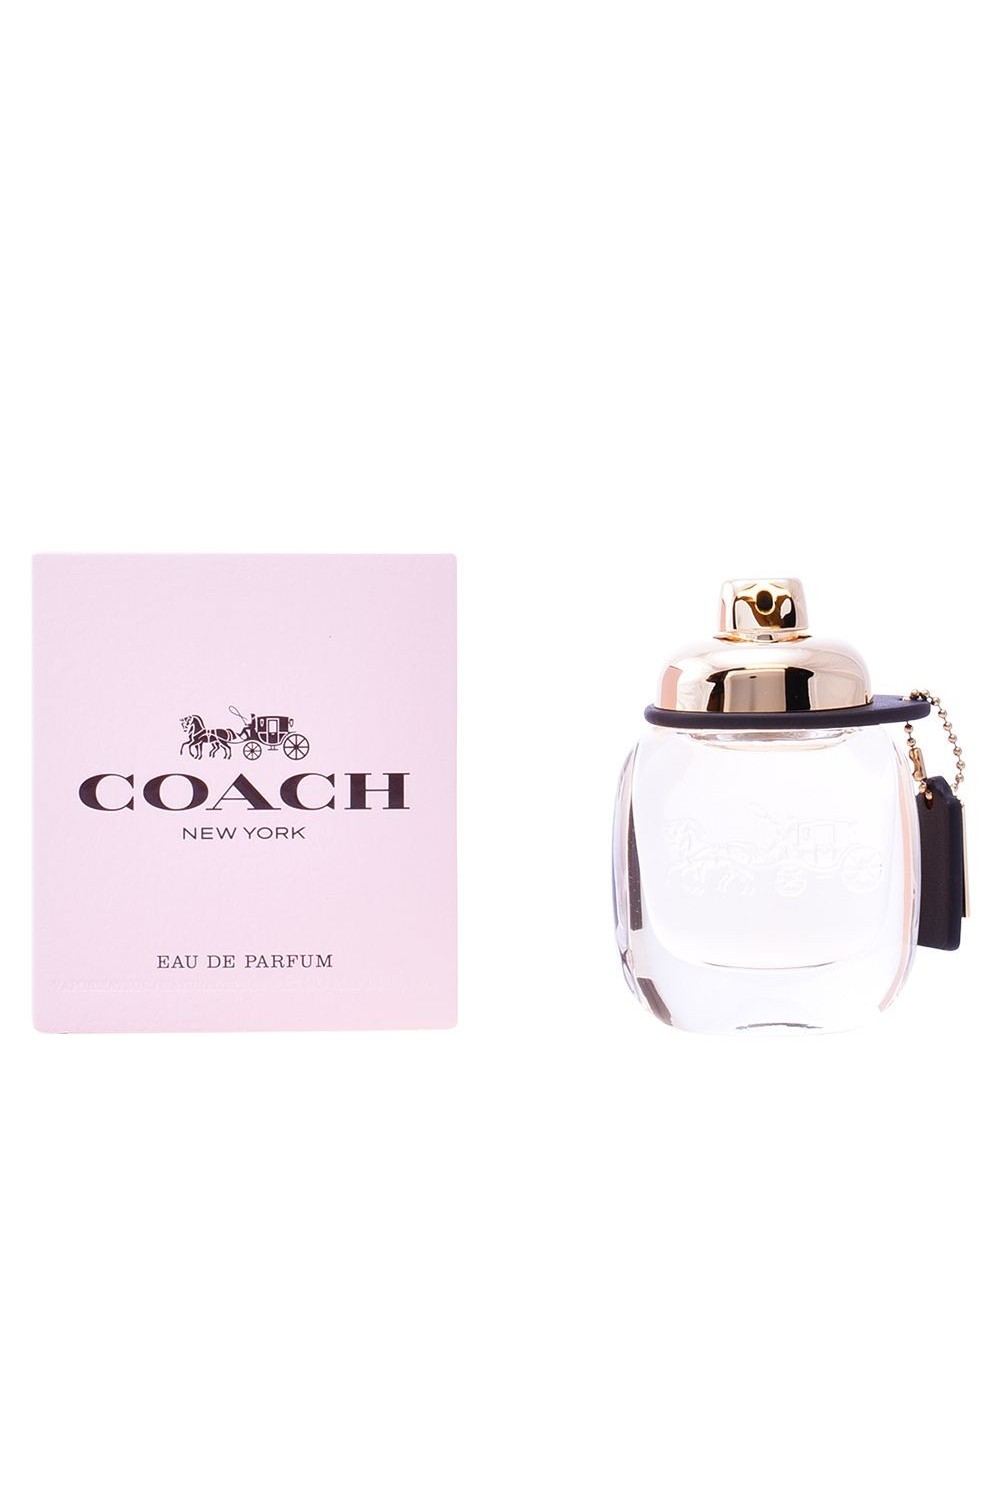 COACH 1941 - Coach New York Eau De Perfume Spray 30ml